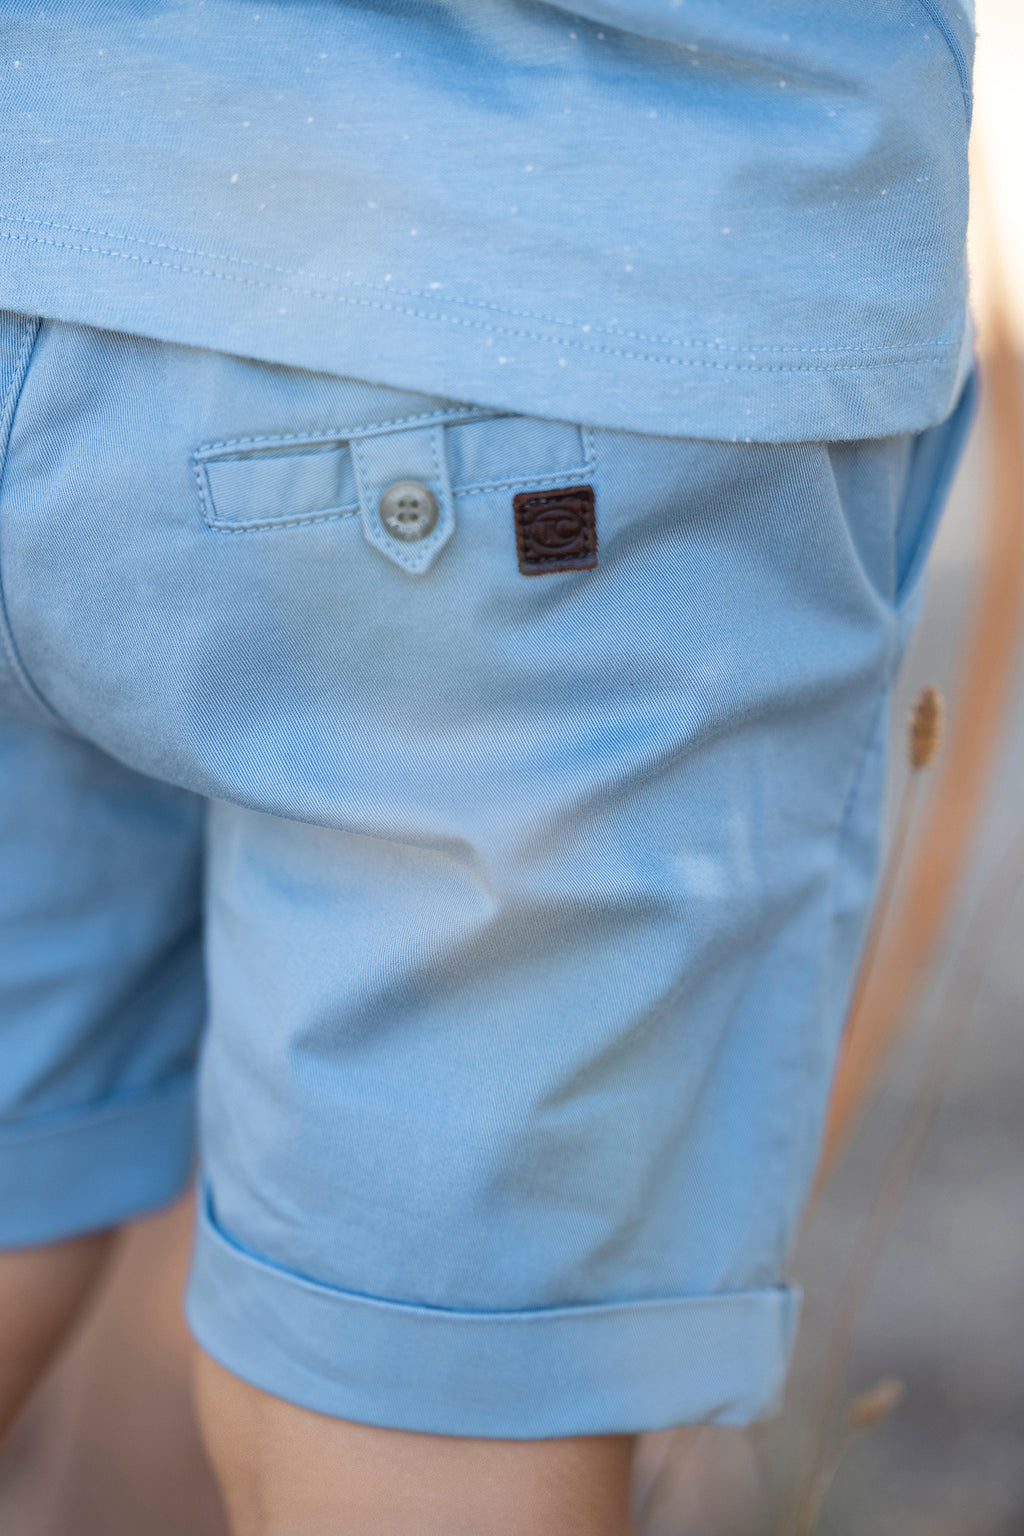 Pantaloncino - Cotton Azure Twill